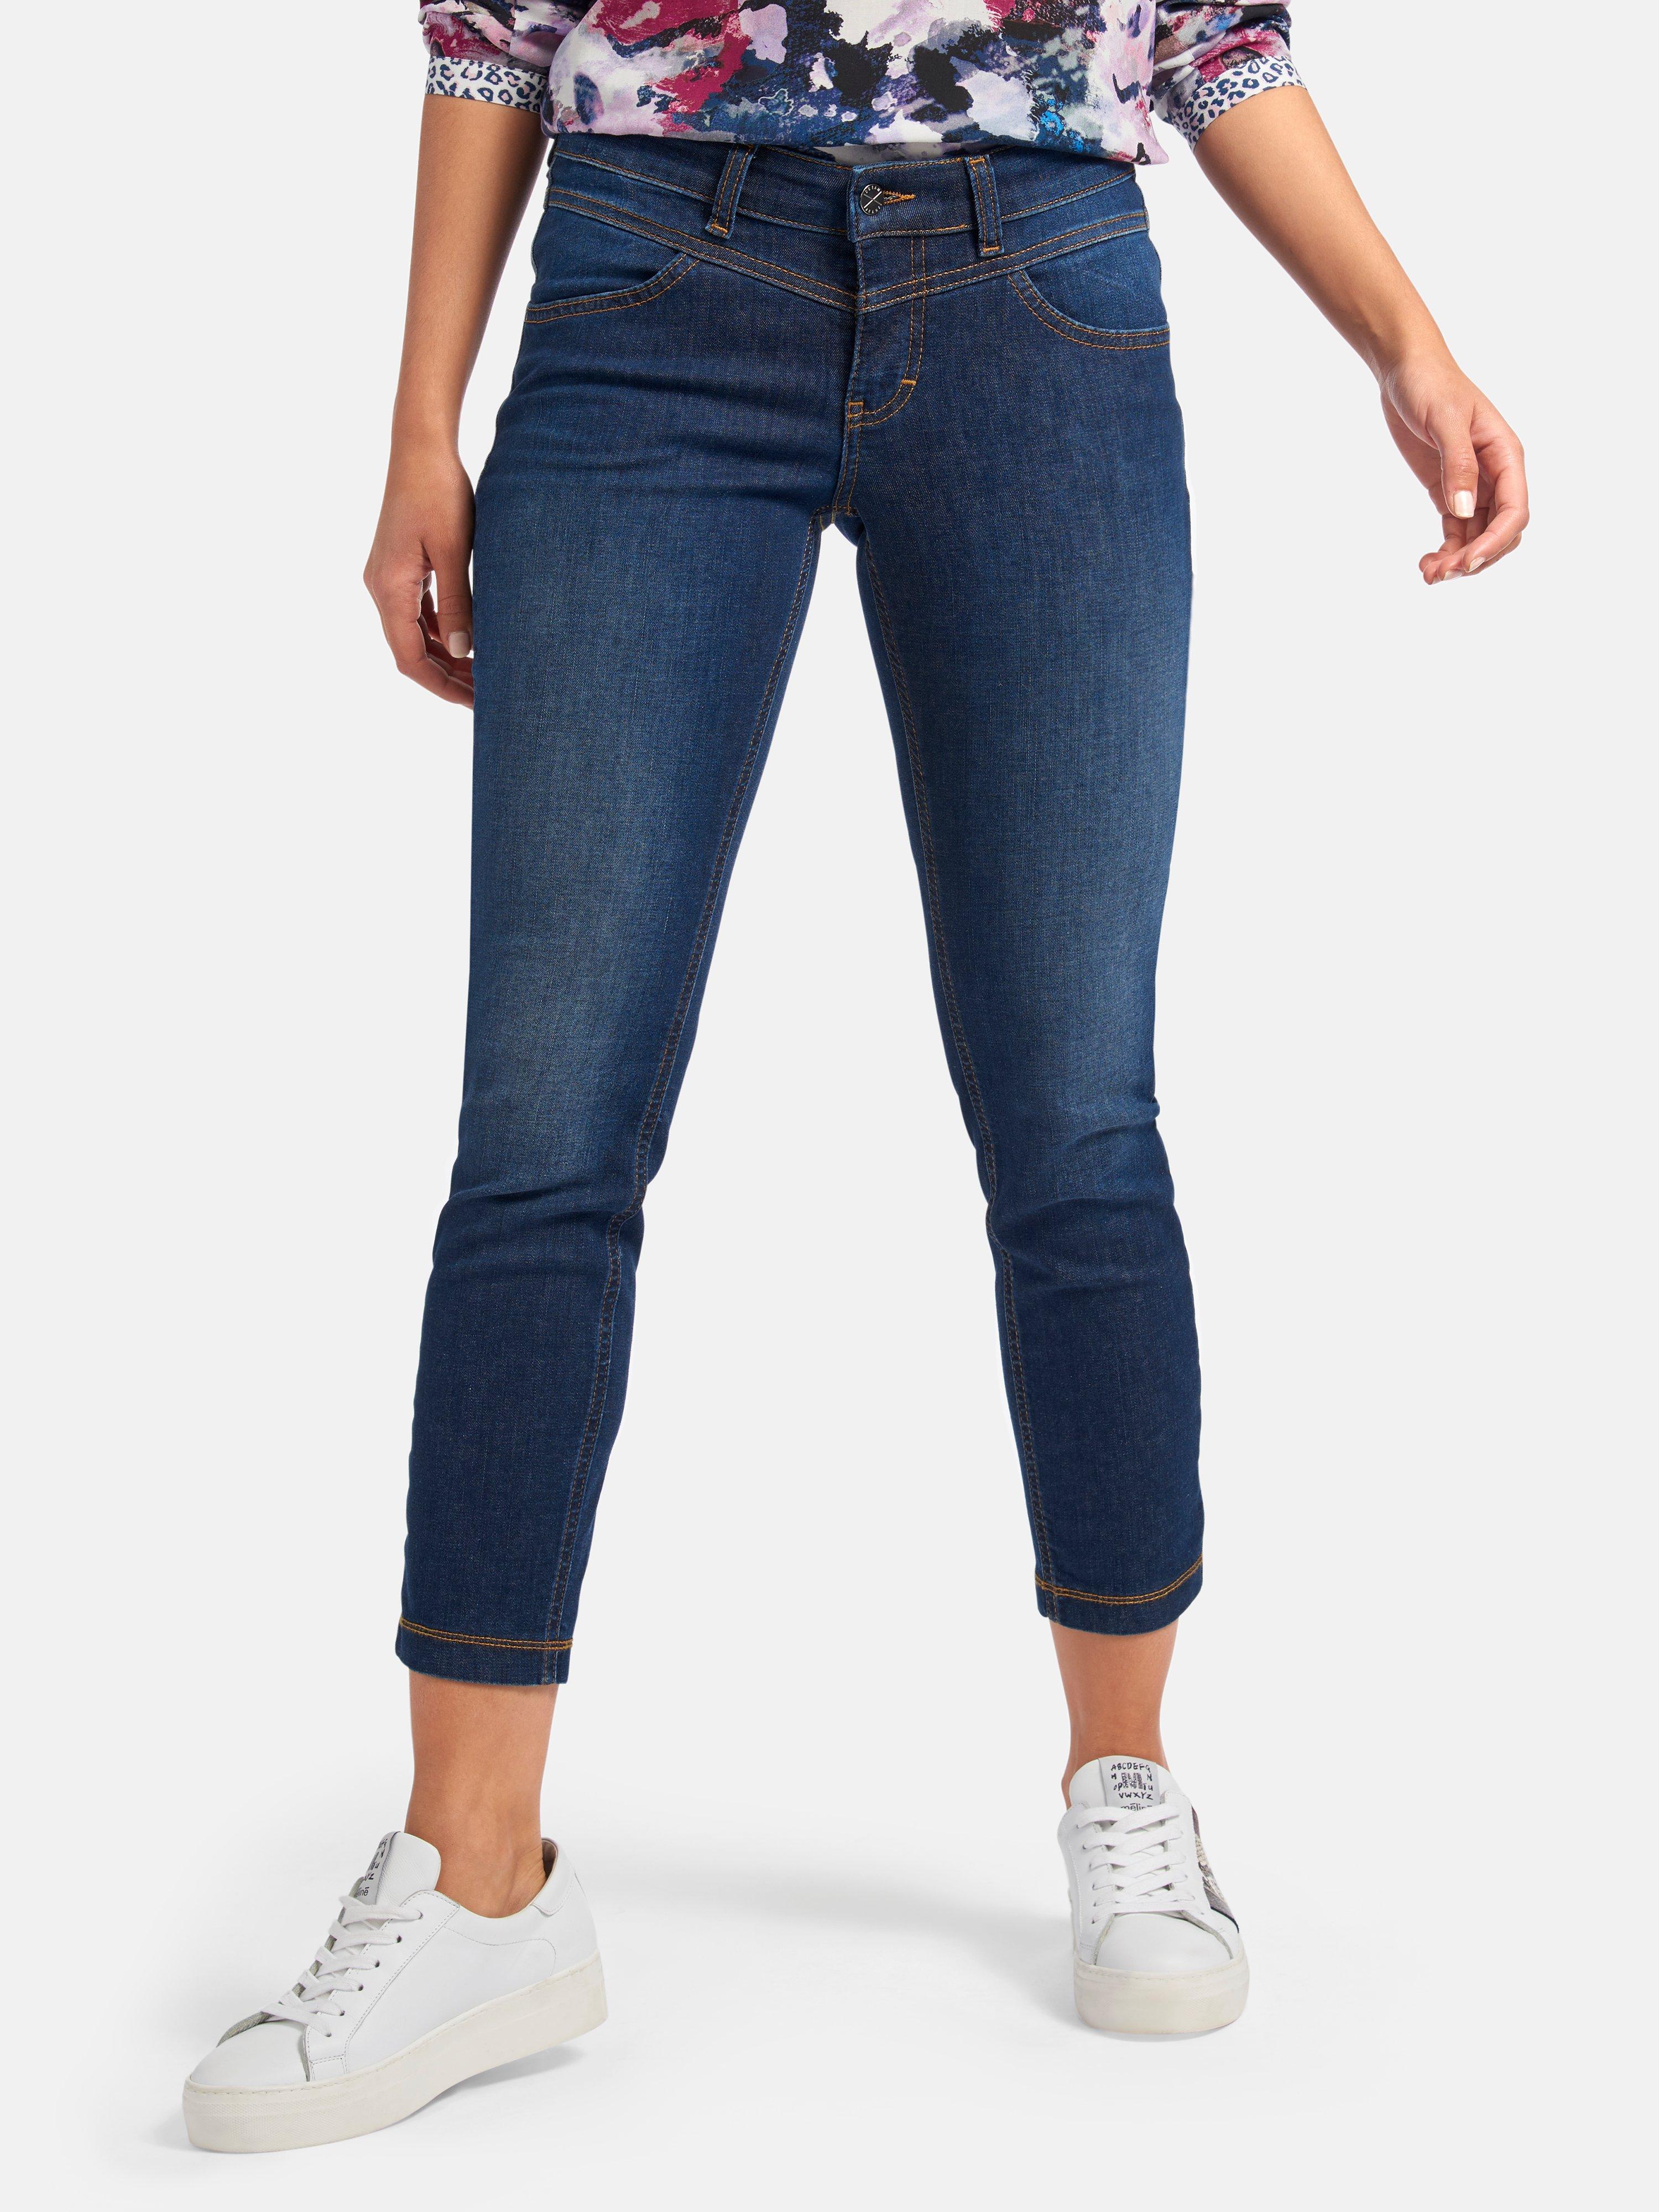 Methode Voetzool Rekwisieten Mac - Jeans Dream Slim inchlengte 28 - blue-denim